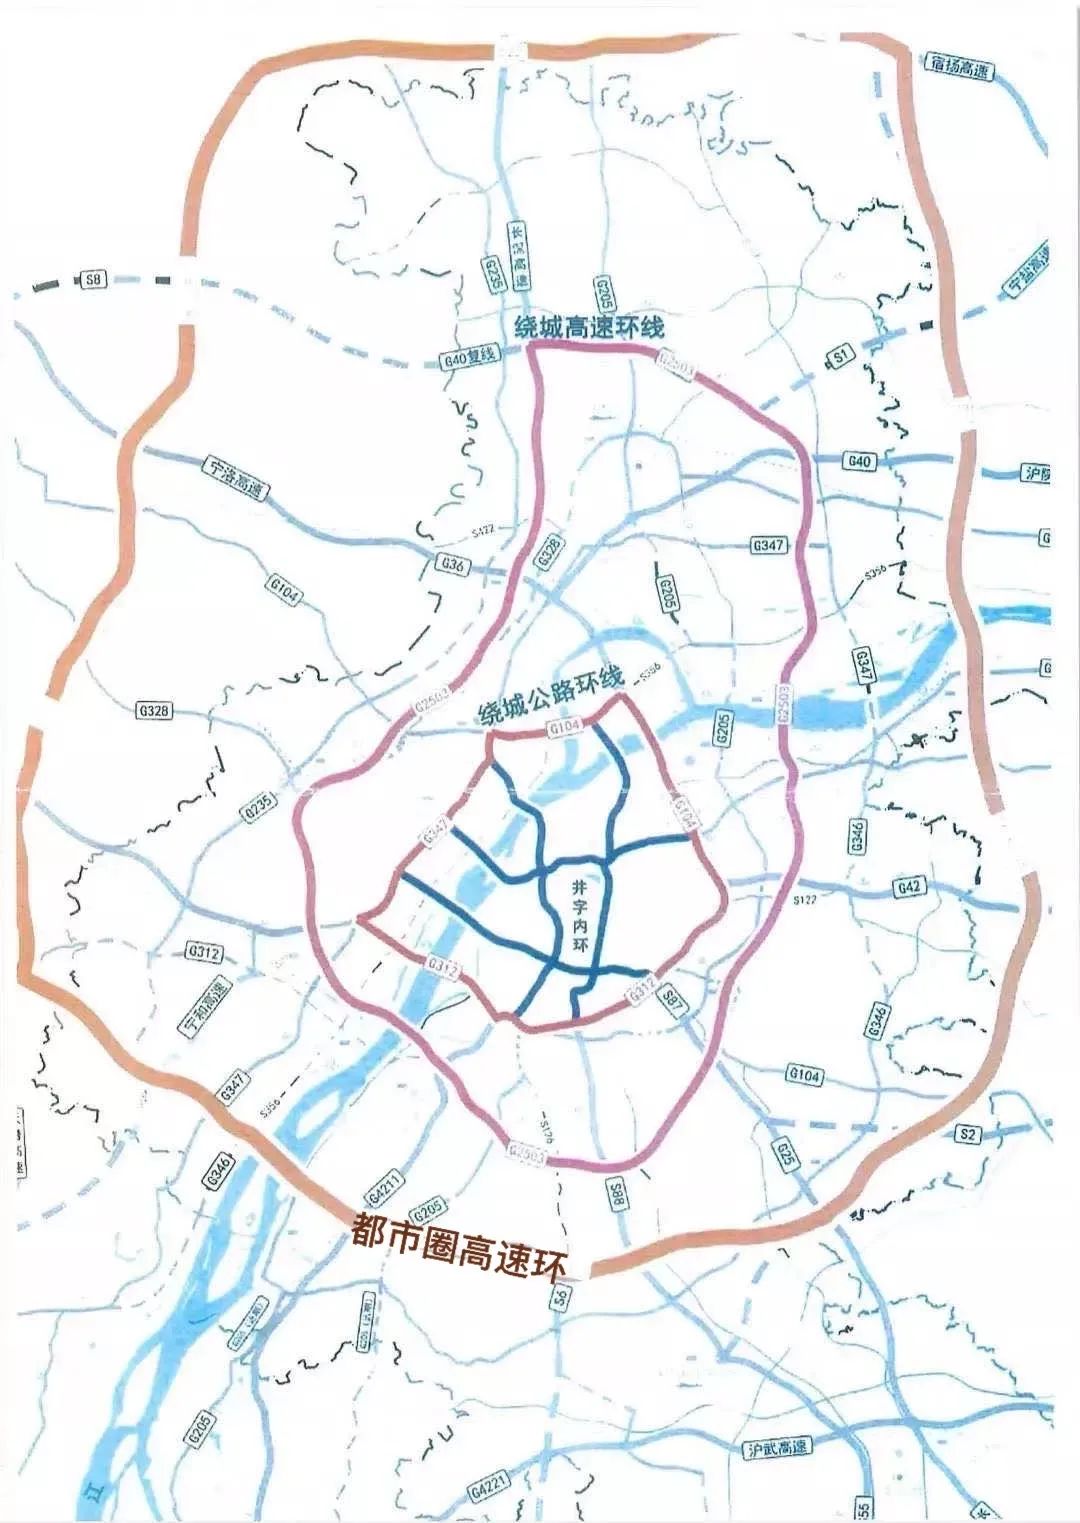 南京绕城公路万家楼交通枢纽互通改造工程项目成形_江苏国际在线